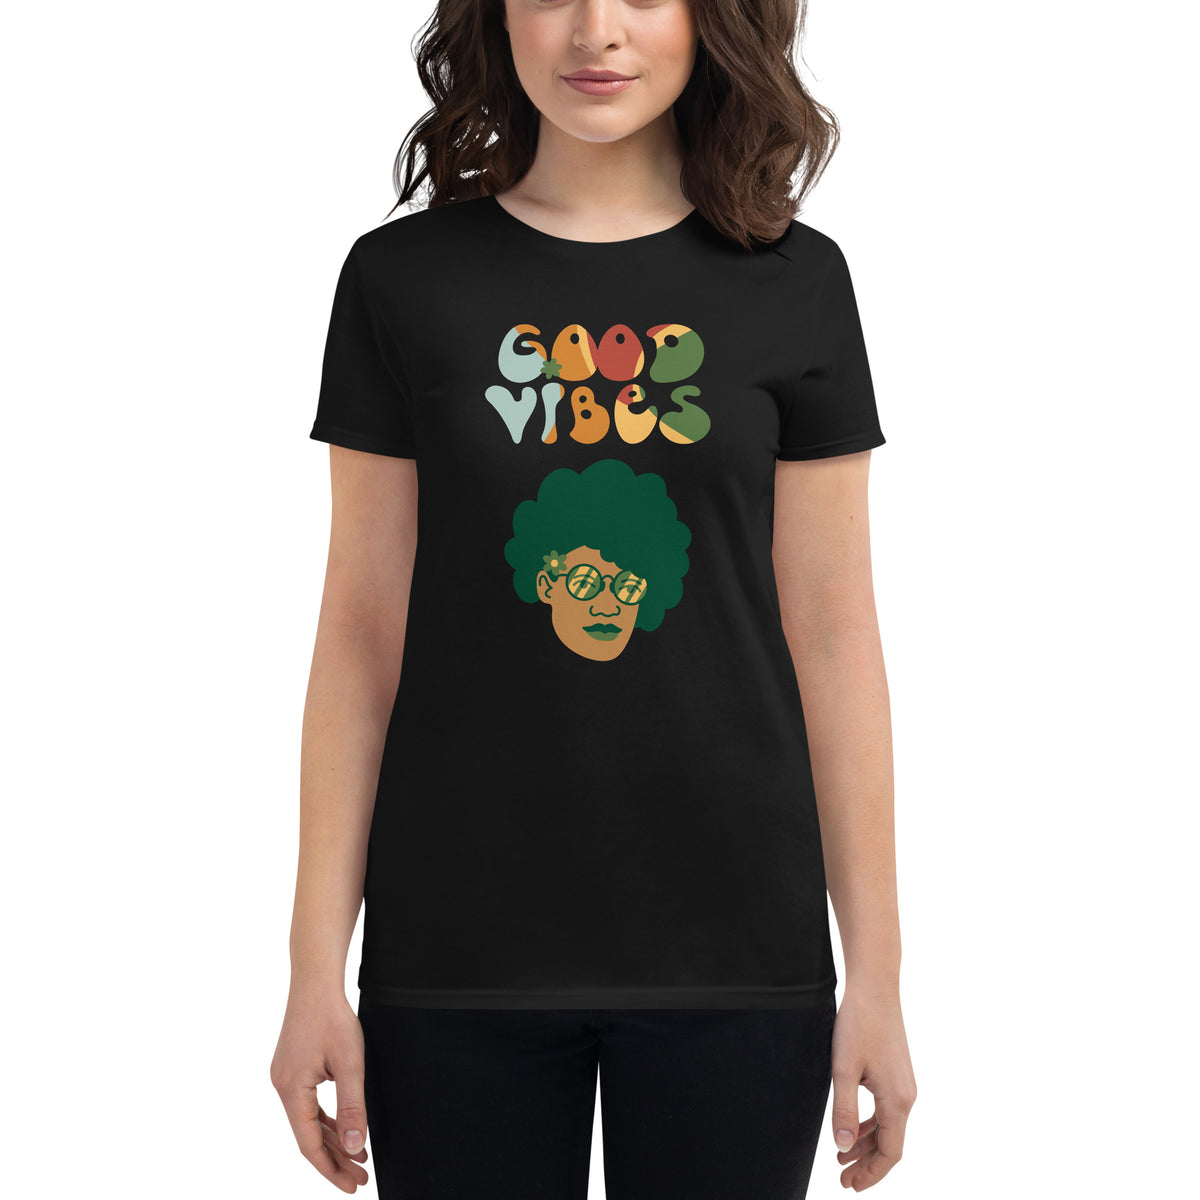 Good Vibes Women's Short Sleeve T-Shirt